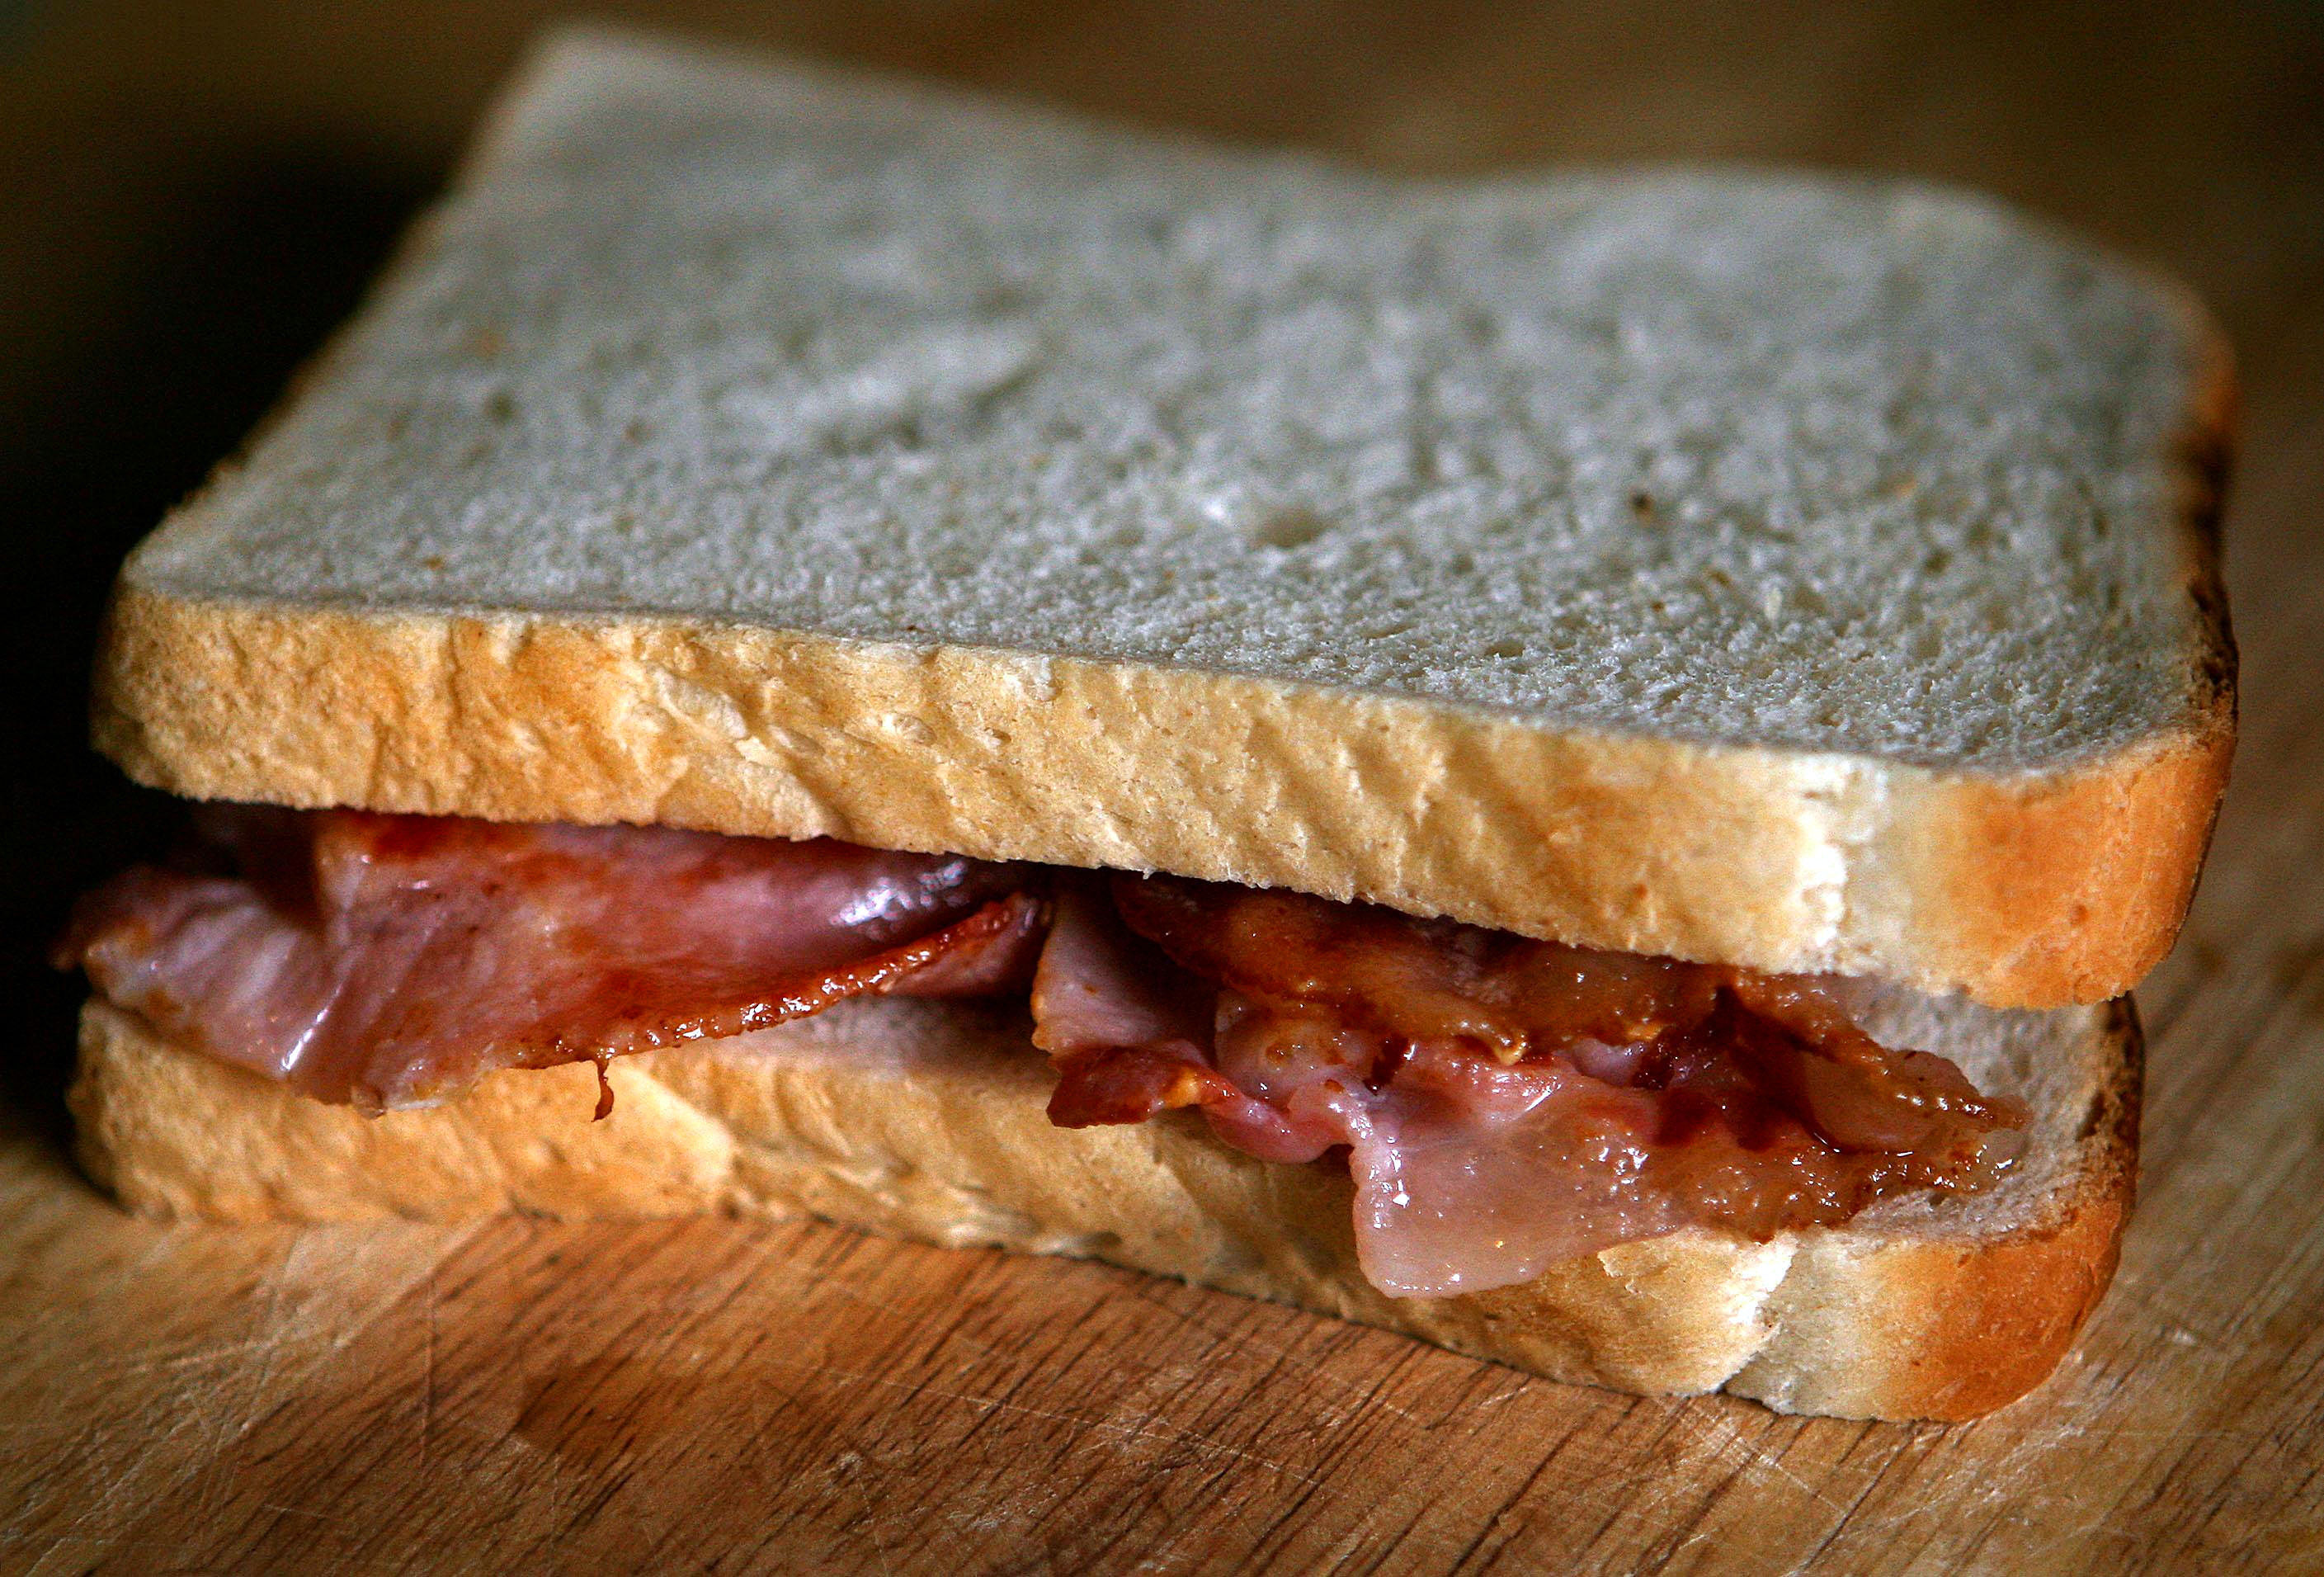 A bacon sandwich